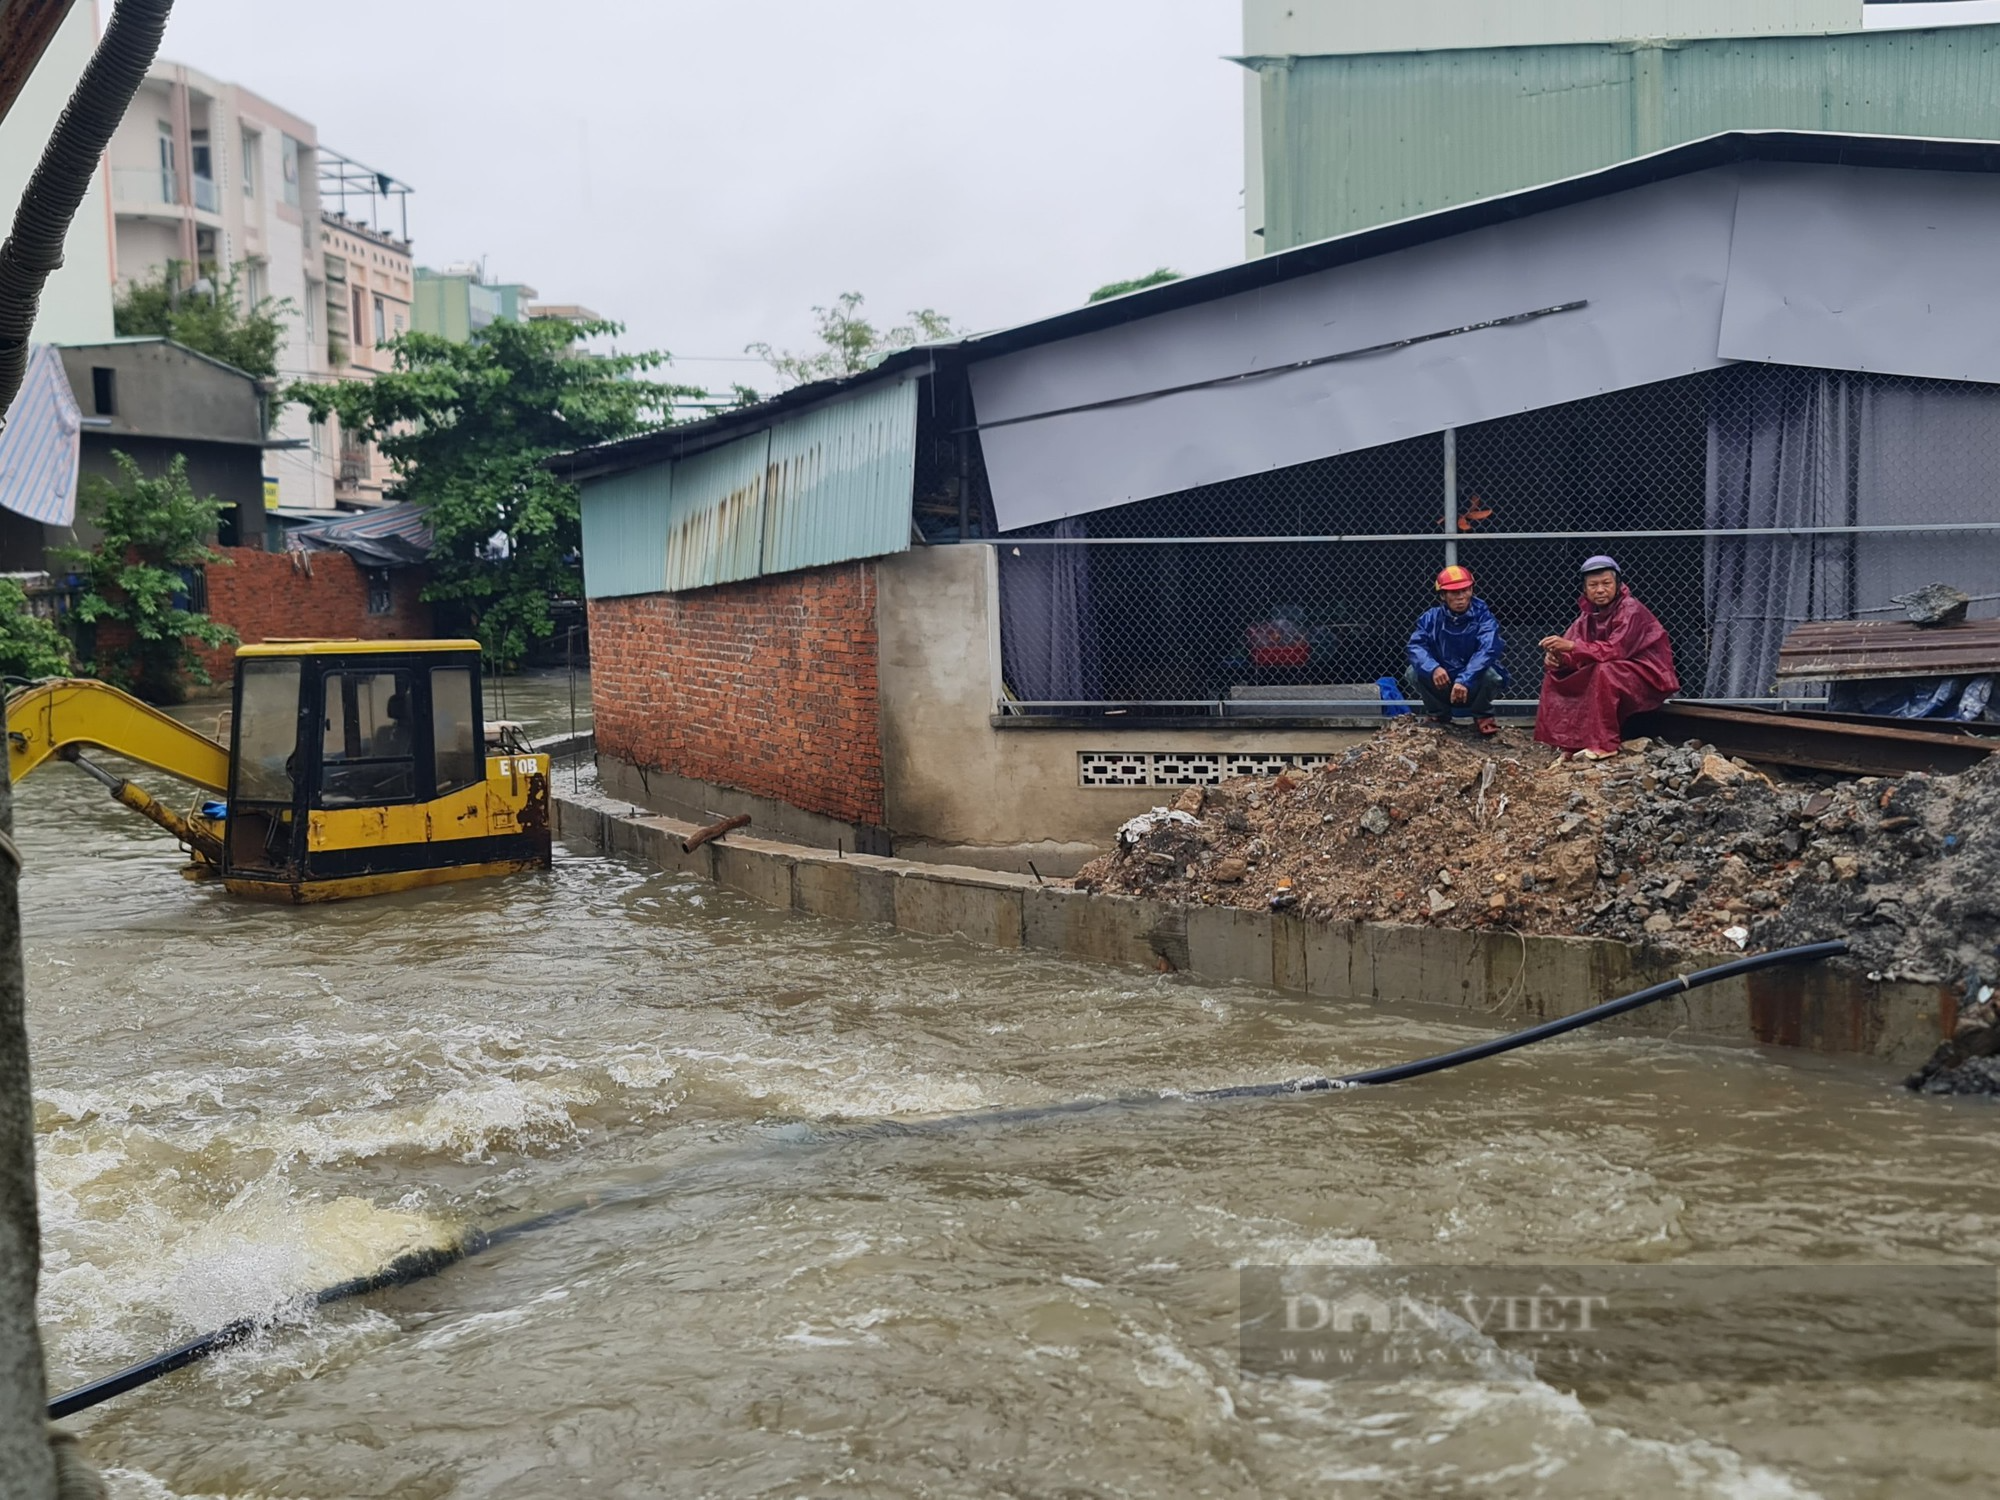 Quảng Nam: Nước cuồn cuộn đổ về, người dân nơm nớp nỗi lo nhà bị sạt lở - Ảnh 6.